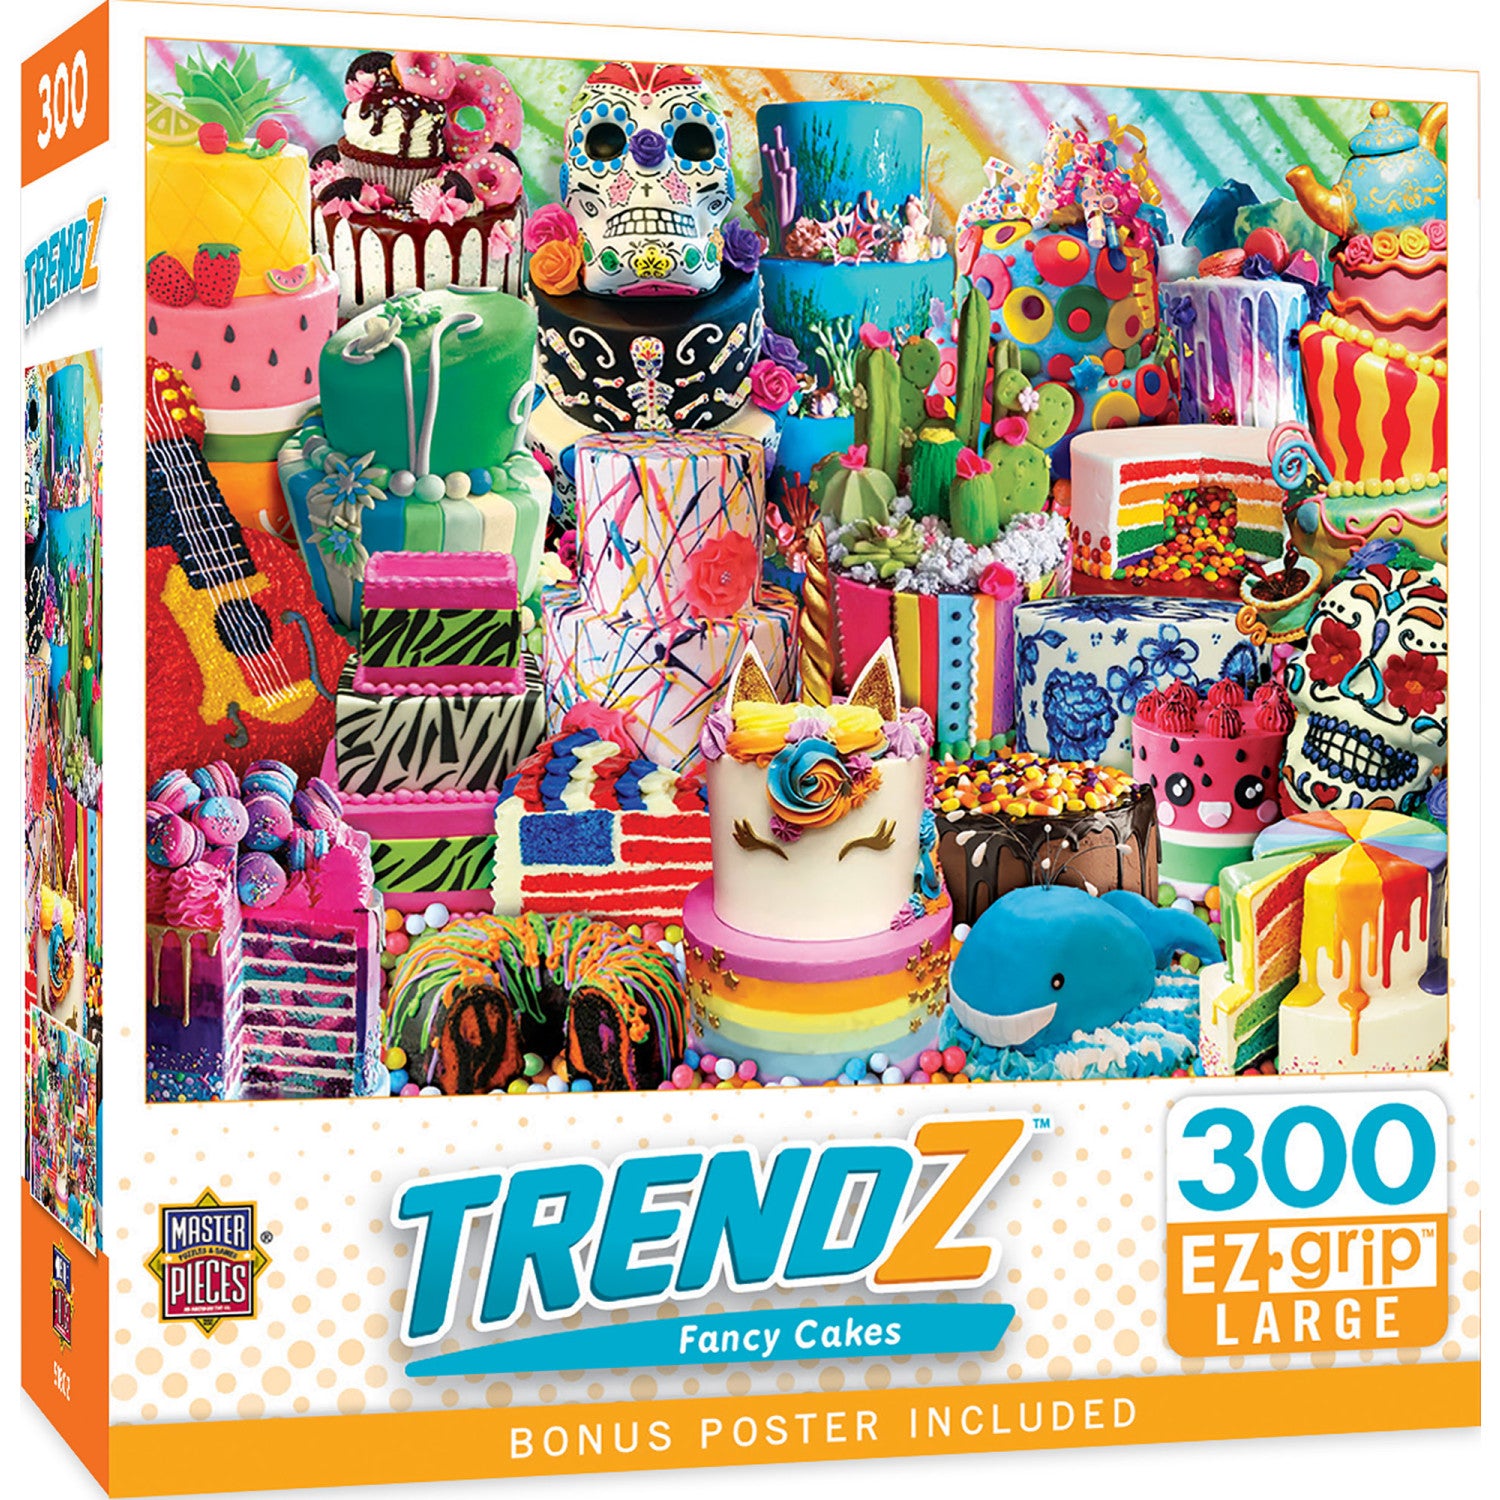 Trendz - Fancy Cakes 300 Piece EZ Grip Jigsaw Puzzle